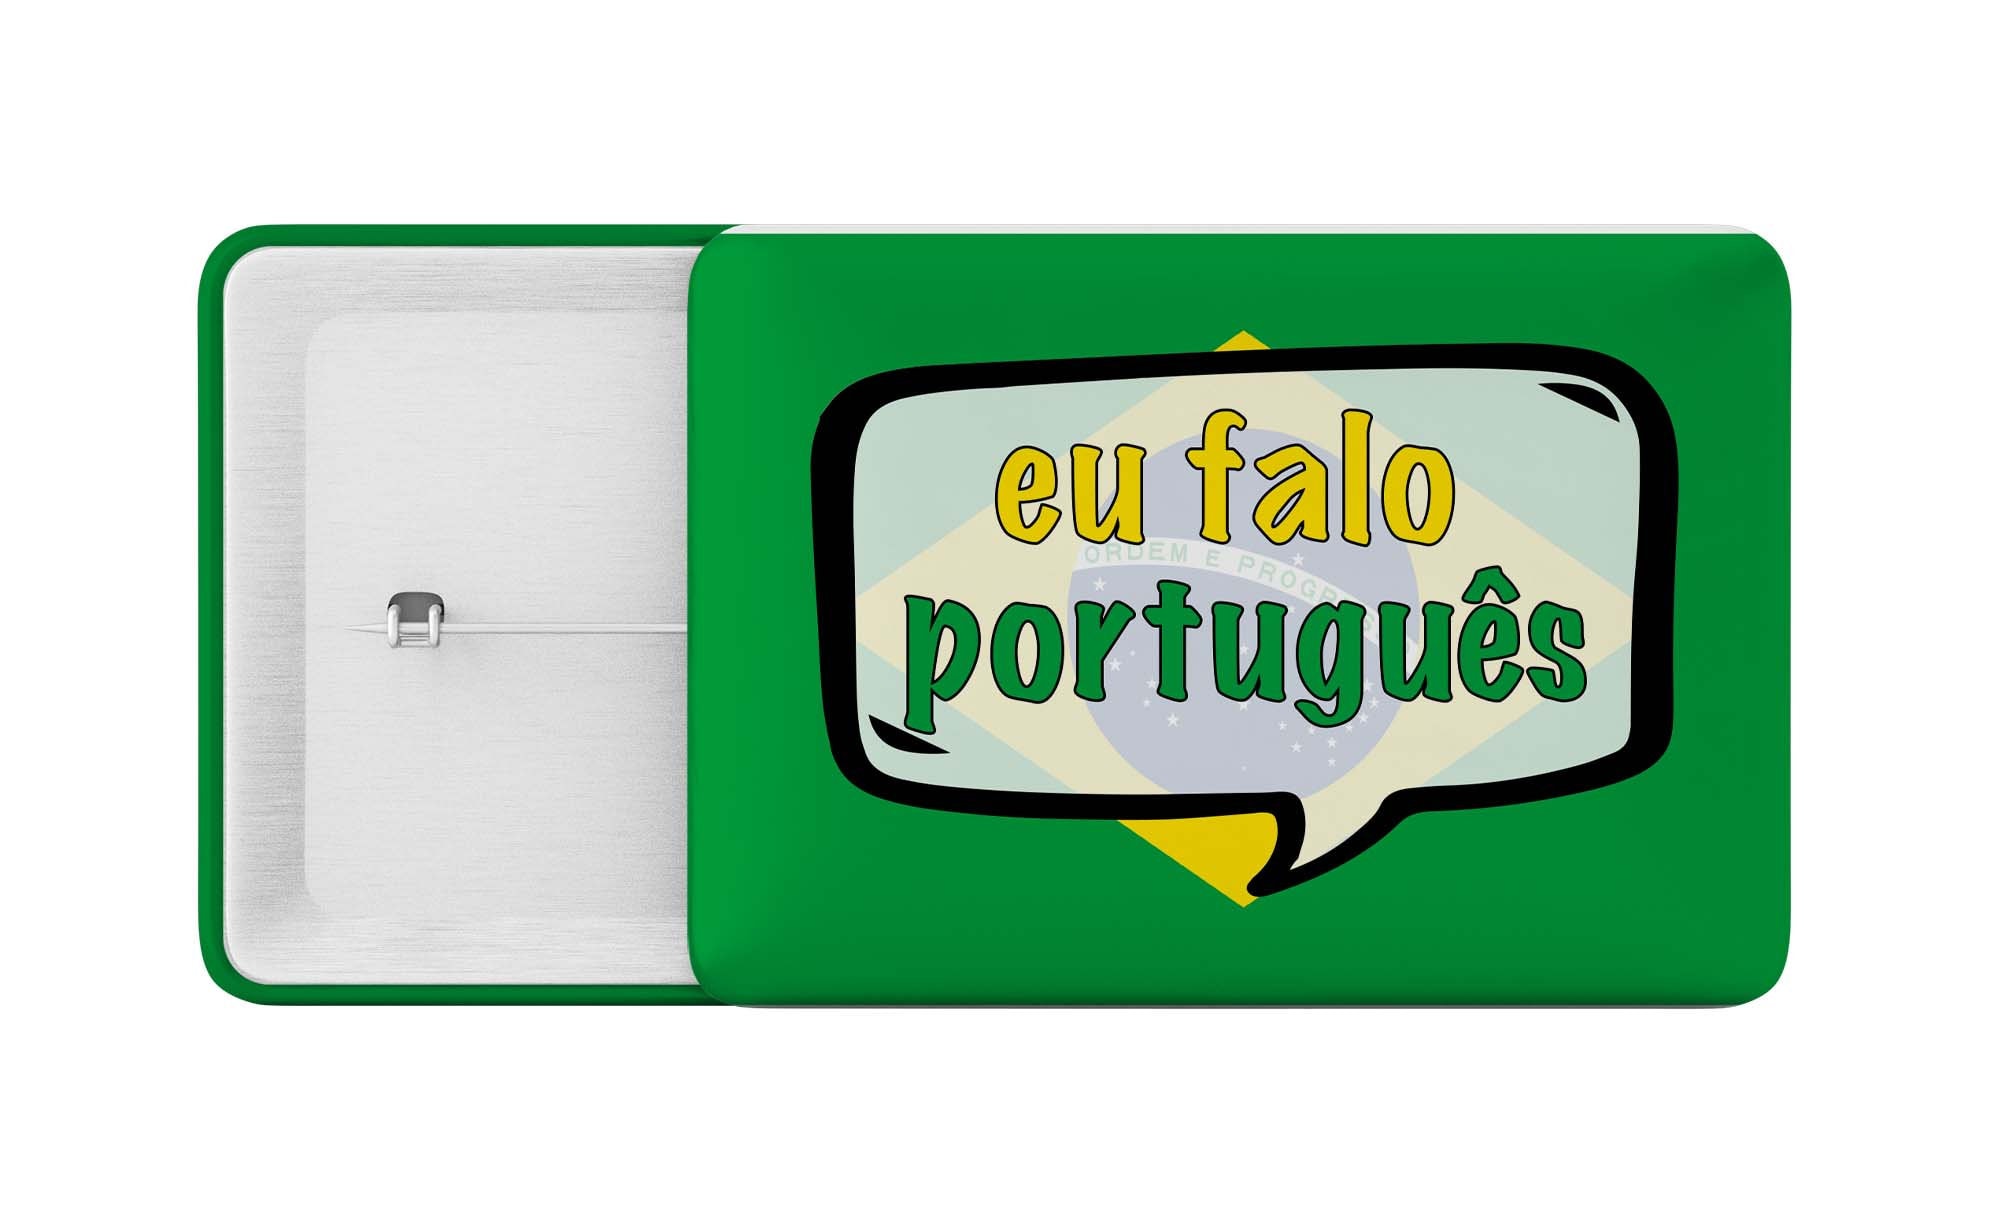 Pin em Língua Portuguesa